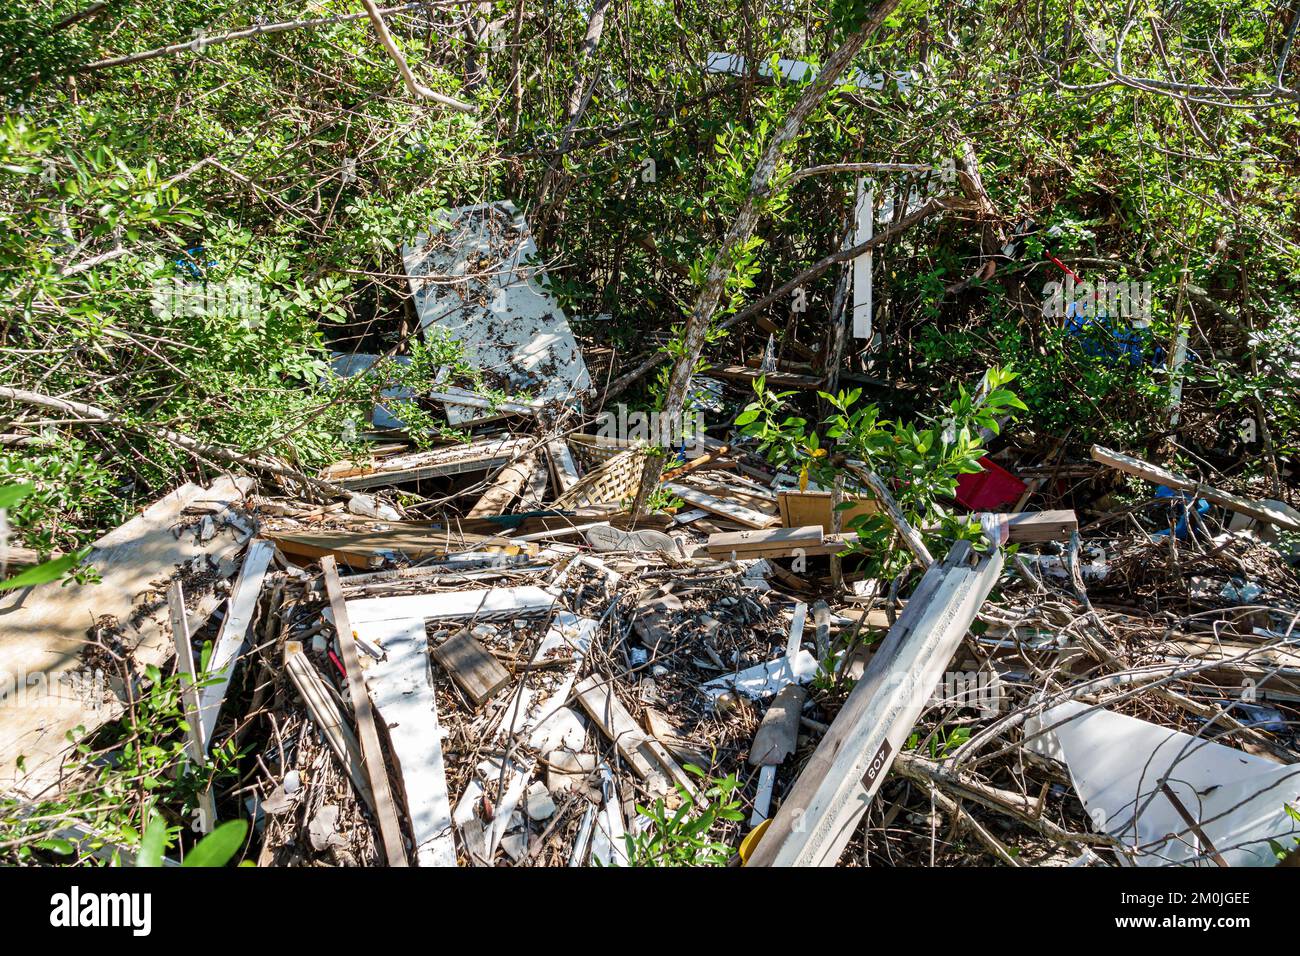 Bonita Springs Bonita Beach Broadway Channel Bay's Island, Hurrikan Ian Schadenszerstörung zerstörte Trümmer Müll Müll von Menschen geschaffene rote Mangrovenbäume Stockfoto